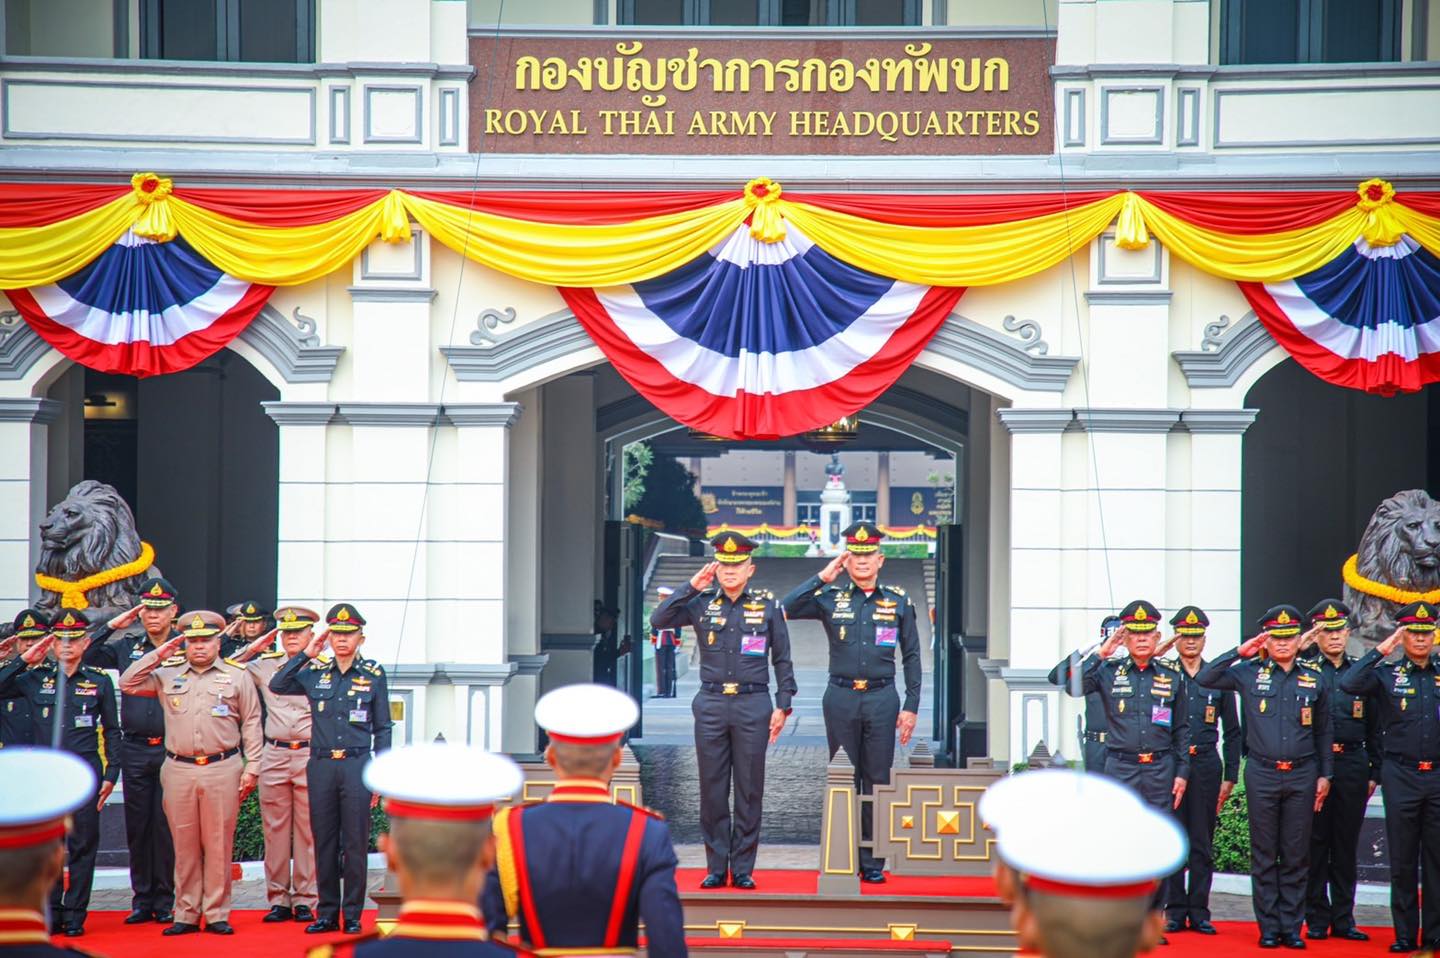 ผู้บัญชาการทหารบก ให้การต้อนรับผู้บัญชาการทหารสูงสุด ในโอกาสตรวจเยี่ยมกองทัพบก และเป็นประธานประชุมผู้บัญชาการเหล่าทัพ ครั้งที่ 2/2567